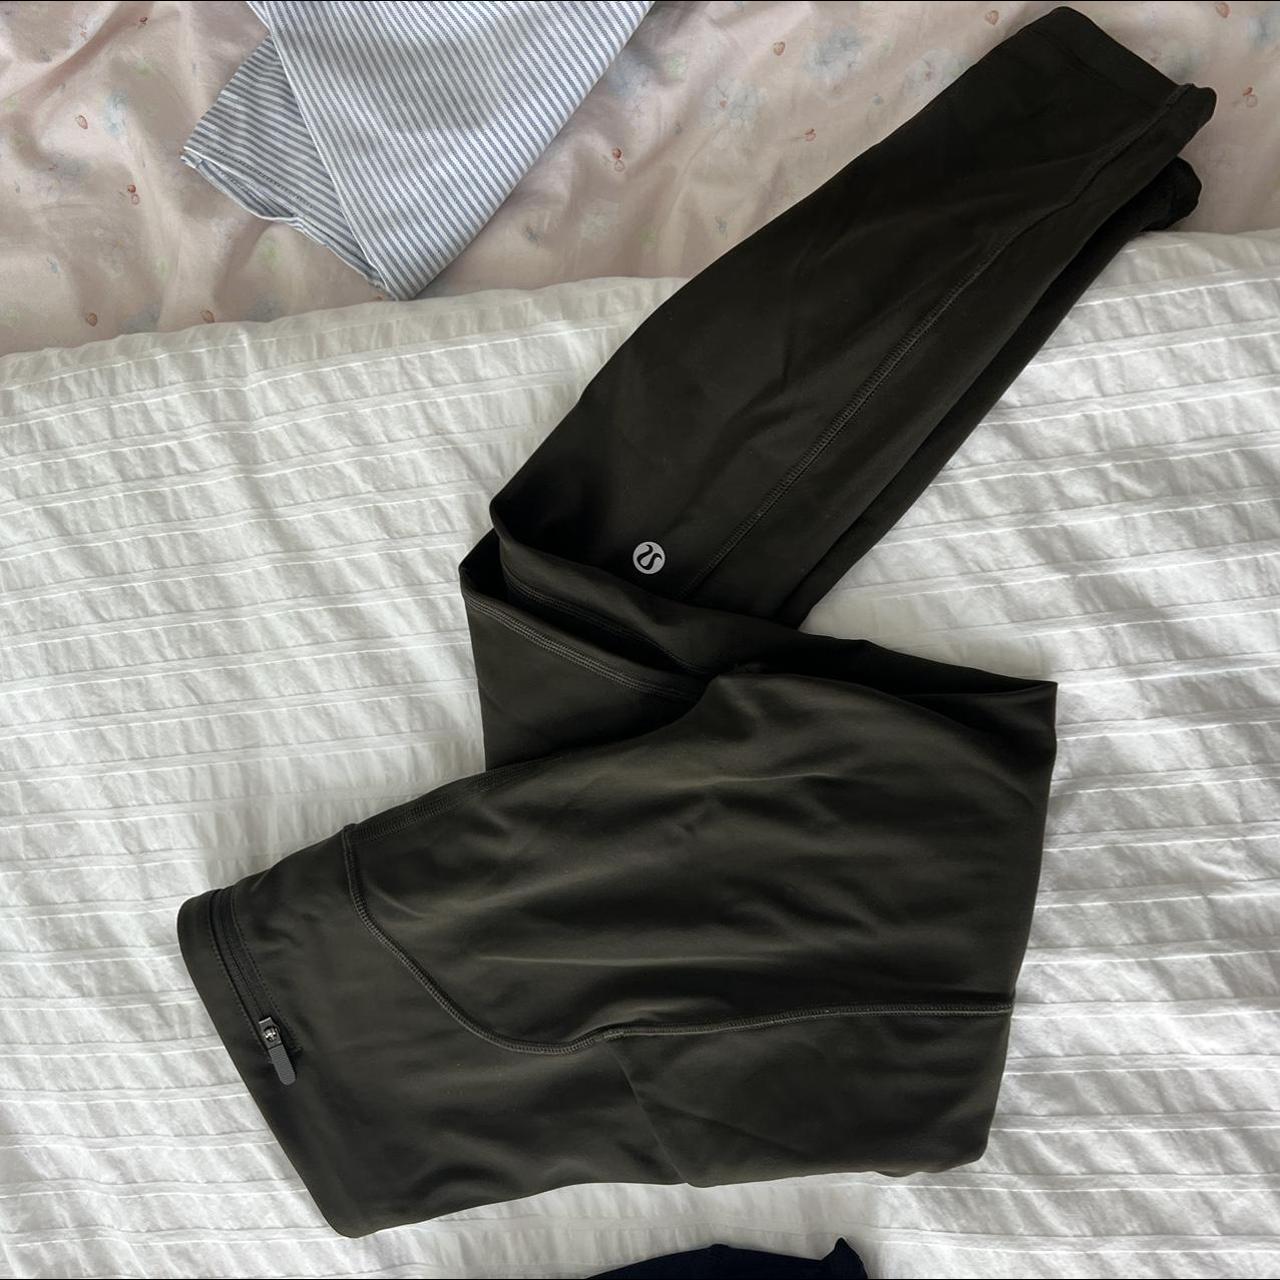 Lululemon leggings with pockets on the side olive - Depop